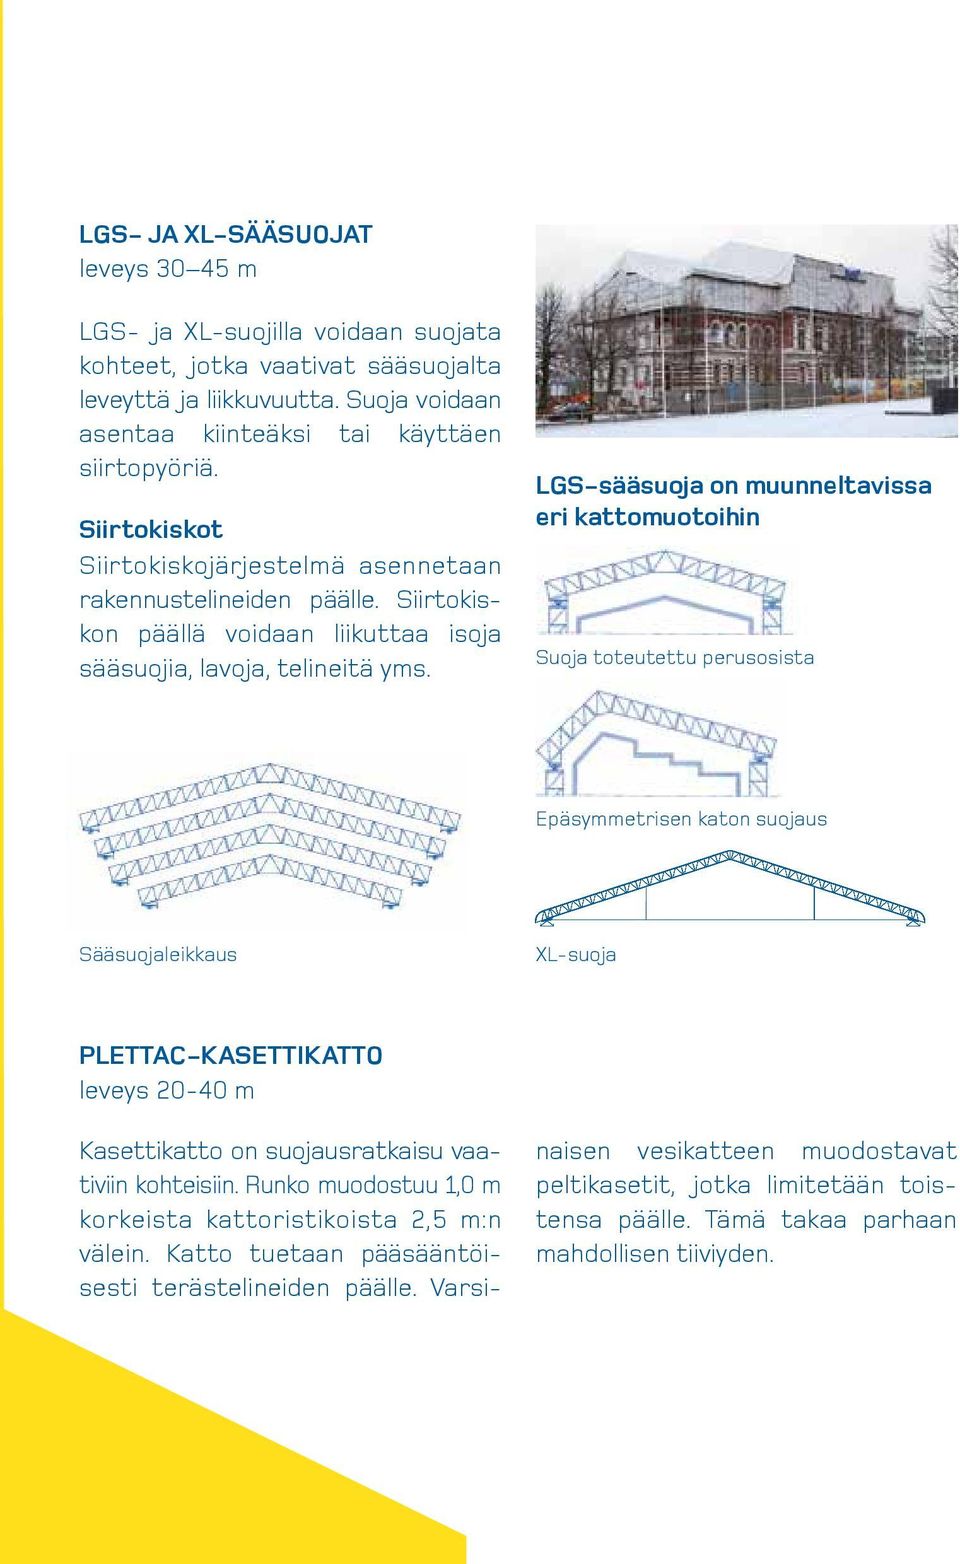 LGS-sääsuoja on muunneltavissa eri kattomuotoihin Suoja toteutettu perusosista Epäsymmetrisen katon suojaus Sääsuojaleikkaus XL-suoja PLETTAC-KASETTIKATTO leveys 20-40 m Kasettikatto on